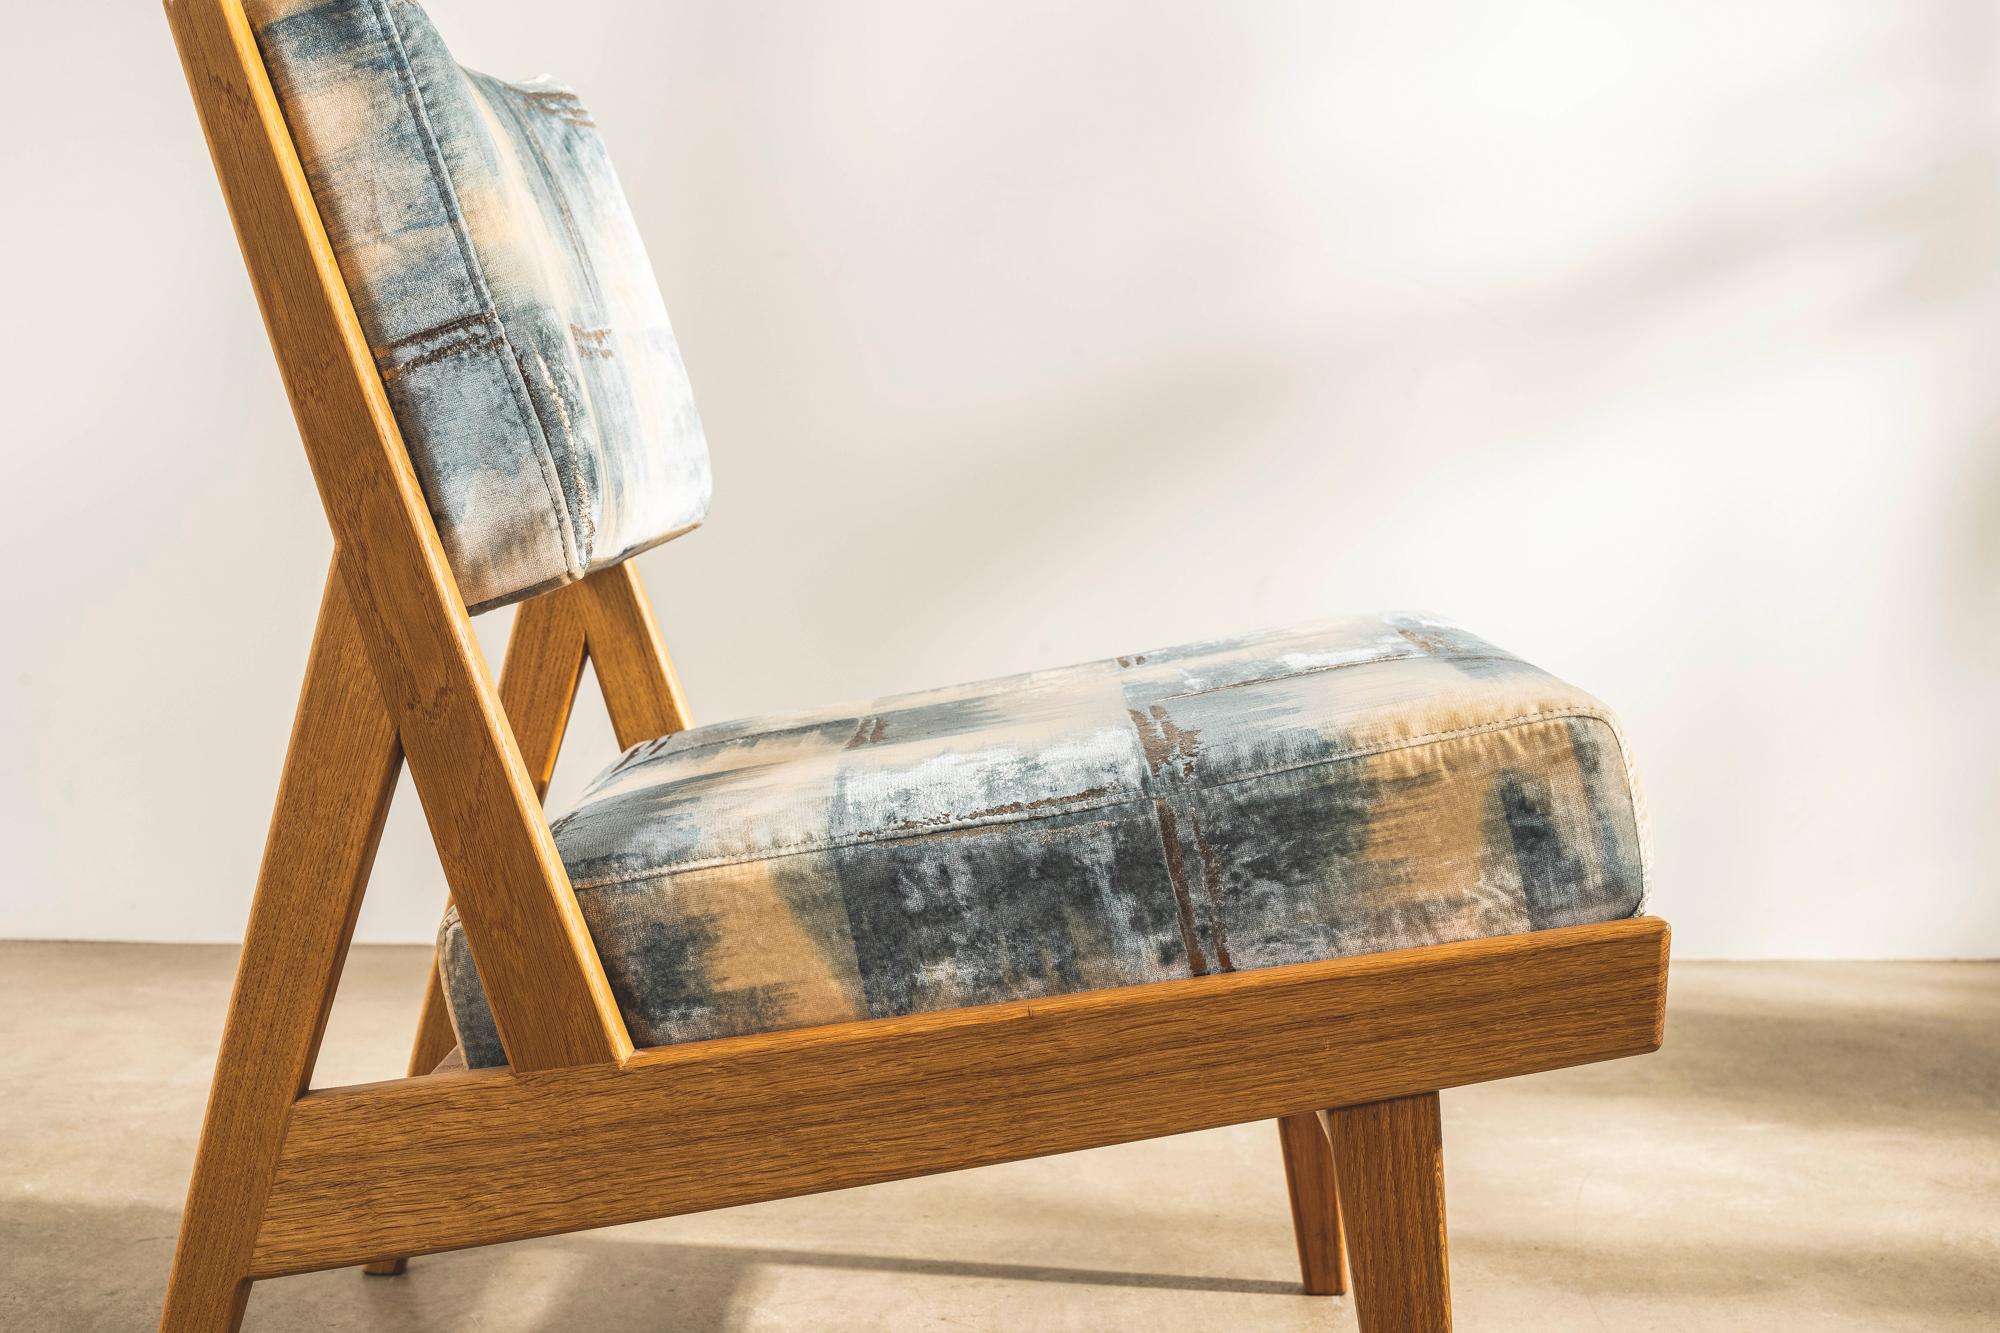 Der armlose Stuhl U431 wurde erstmals 1955 von Jens Risom Inc. vorgestellt. Er wurde von dem legendären, in Dänemark geborenen amerikanischen Designer entworfen und ist ein zeitloses Möbelstück, das sich sowohl in Wohn- als auch in Geschäftsräumen